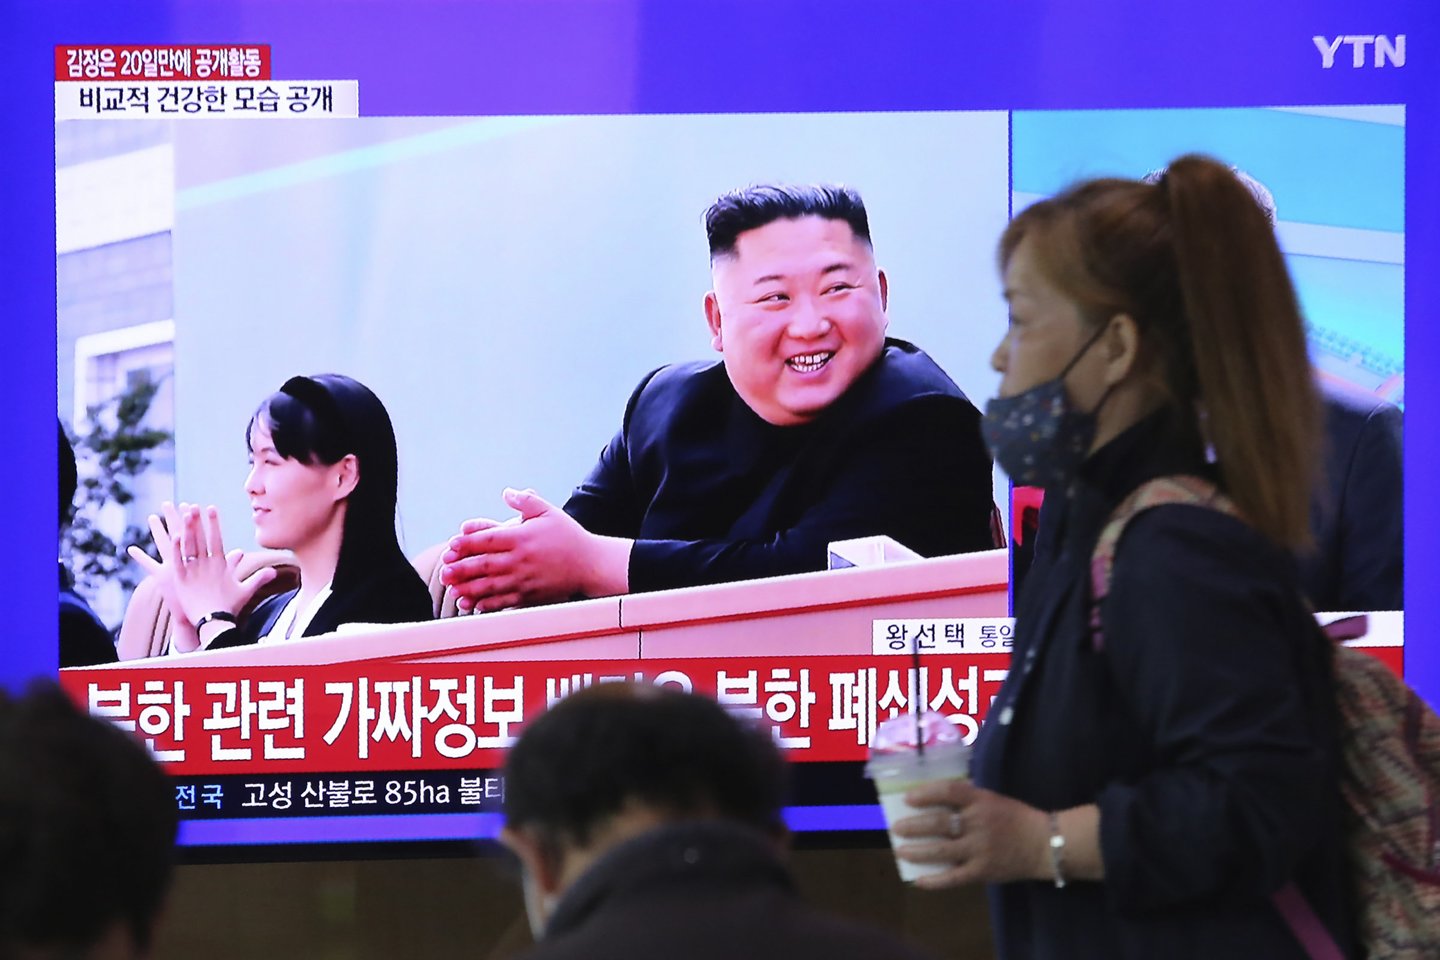  Šiaurės Korėjos lyderis Kim Jong-unas vėl viešai pasirodė – pirmąsyk per pastarąsias tris savaites, šeštadienį pranešė valstybinė žiniasklaida.<br>AFP/Scanpix nuotr.